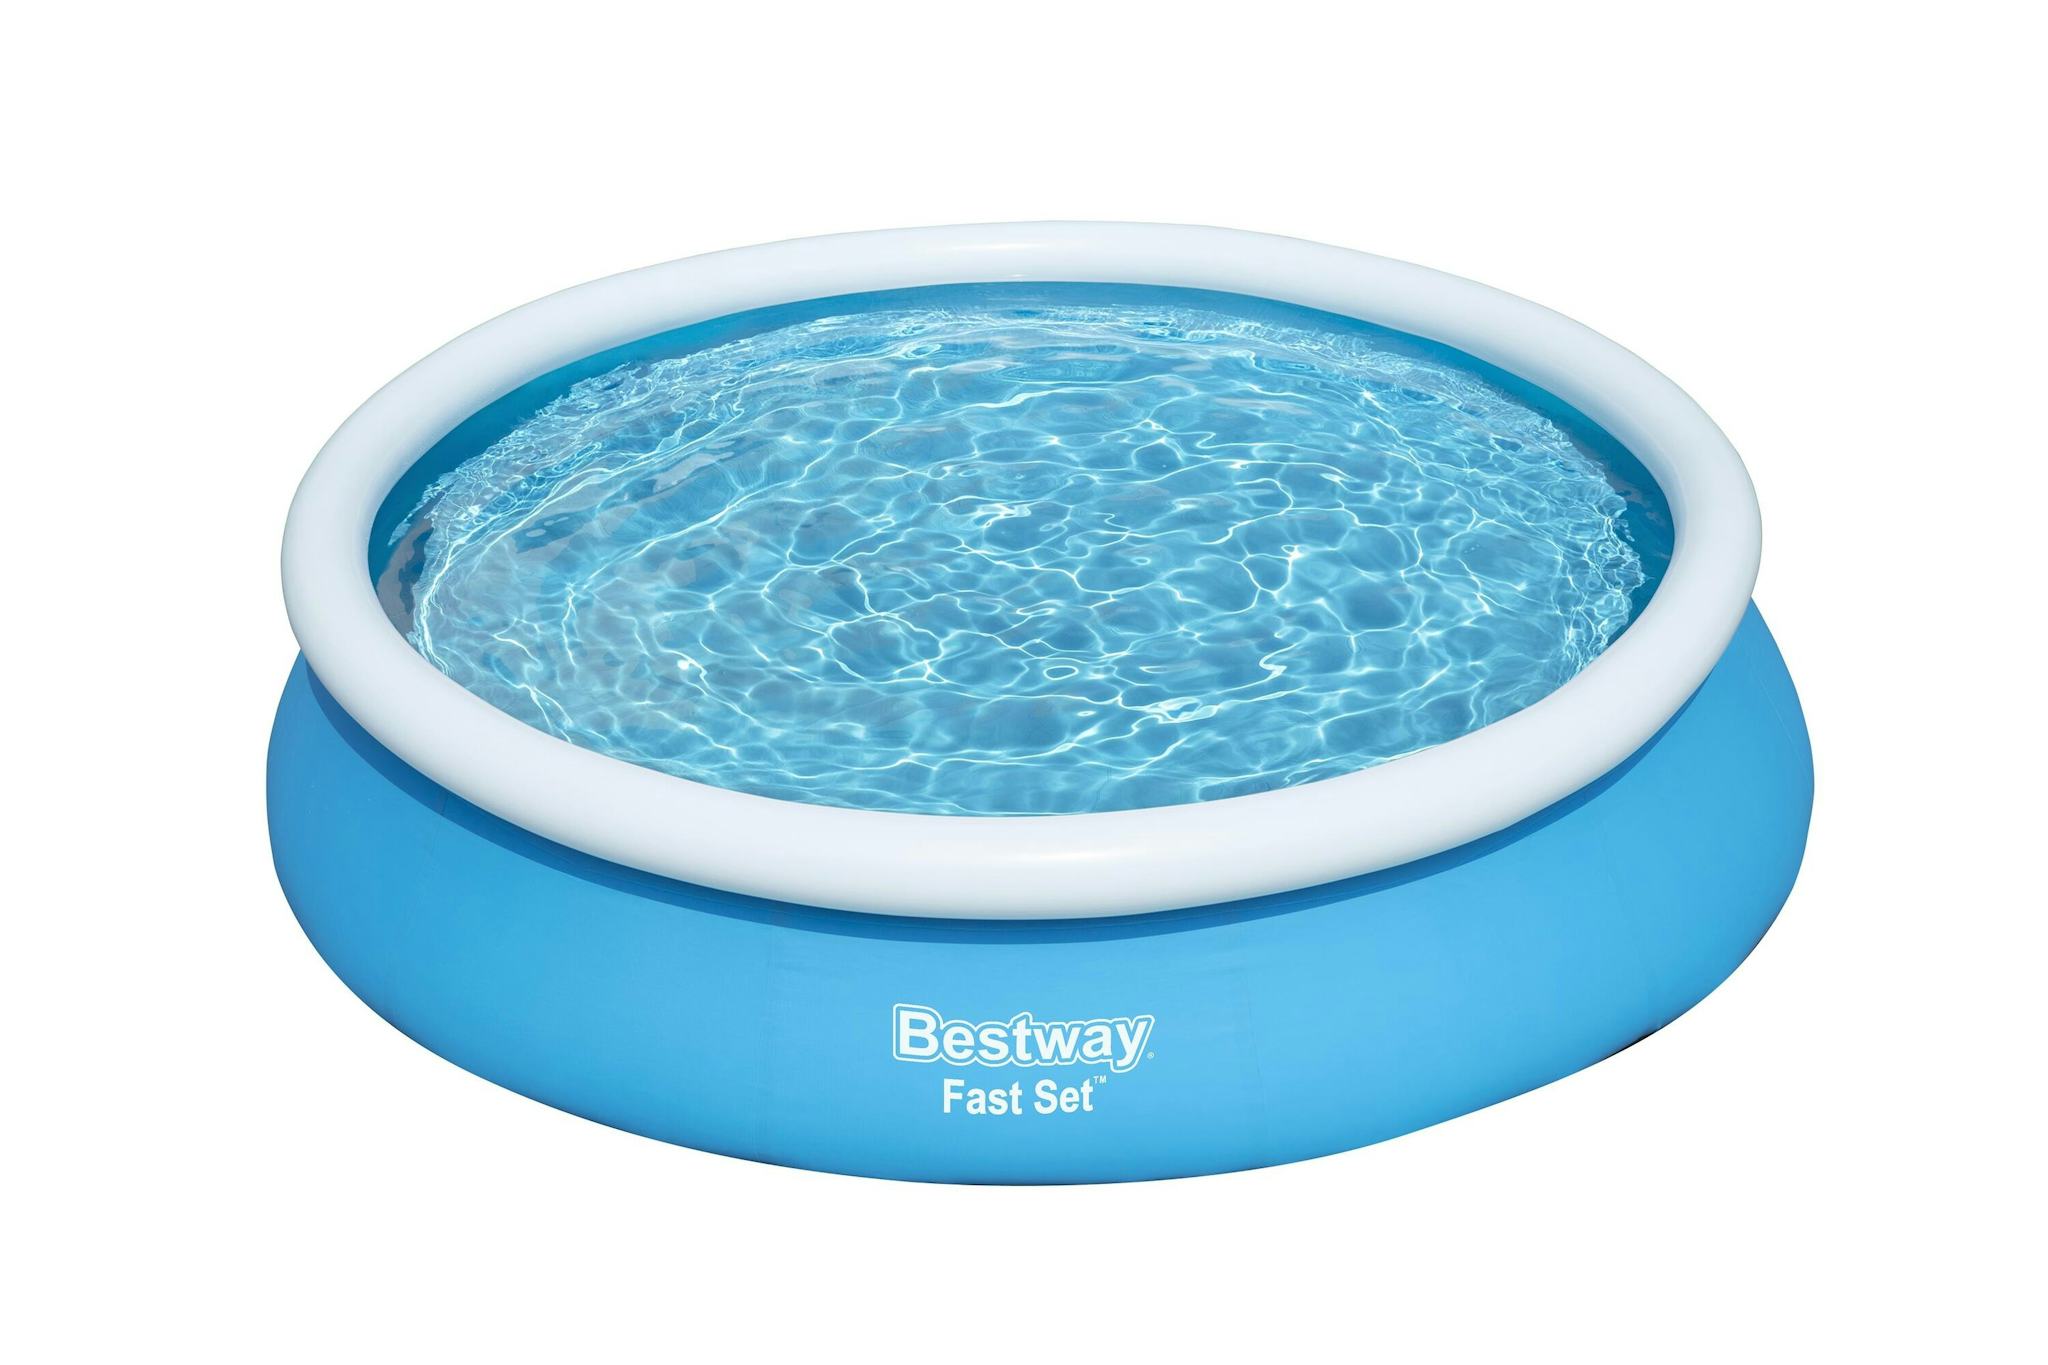 Bovengronds zwembad Fast Set bovengrondse ronde opblaasbare set van 366x76 cm blauw Bestway 1